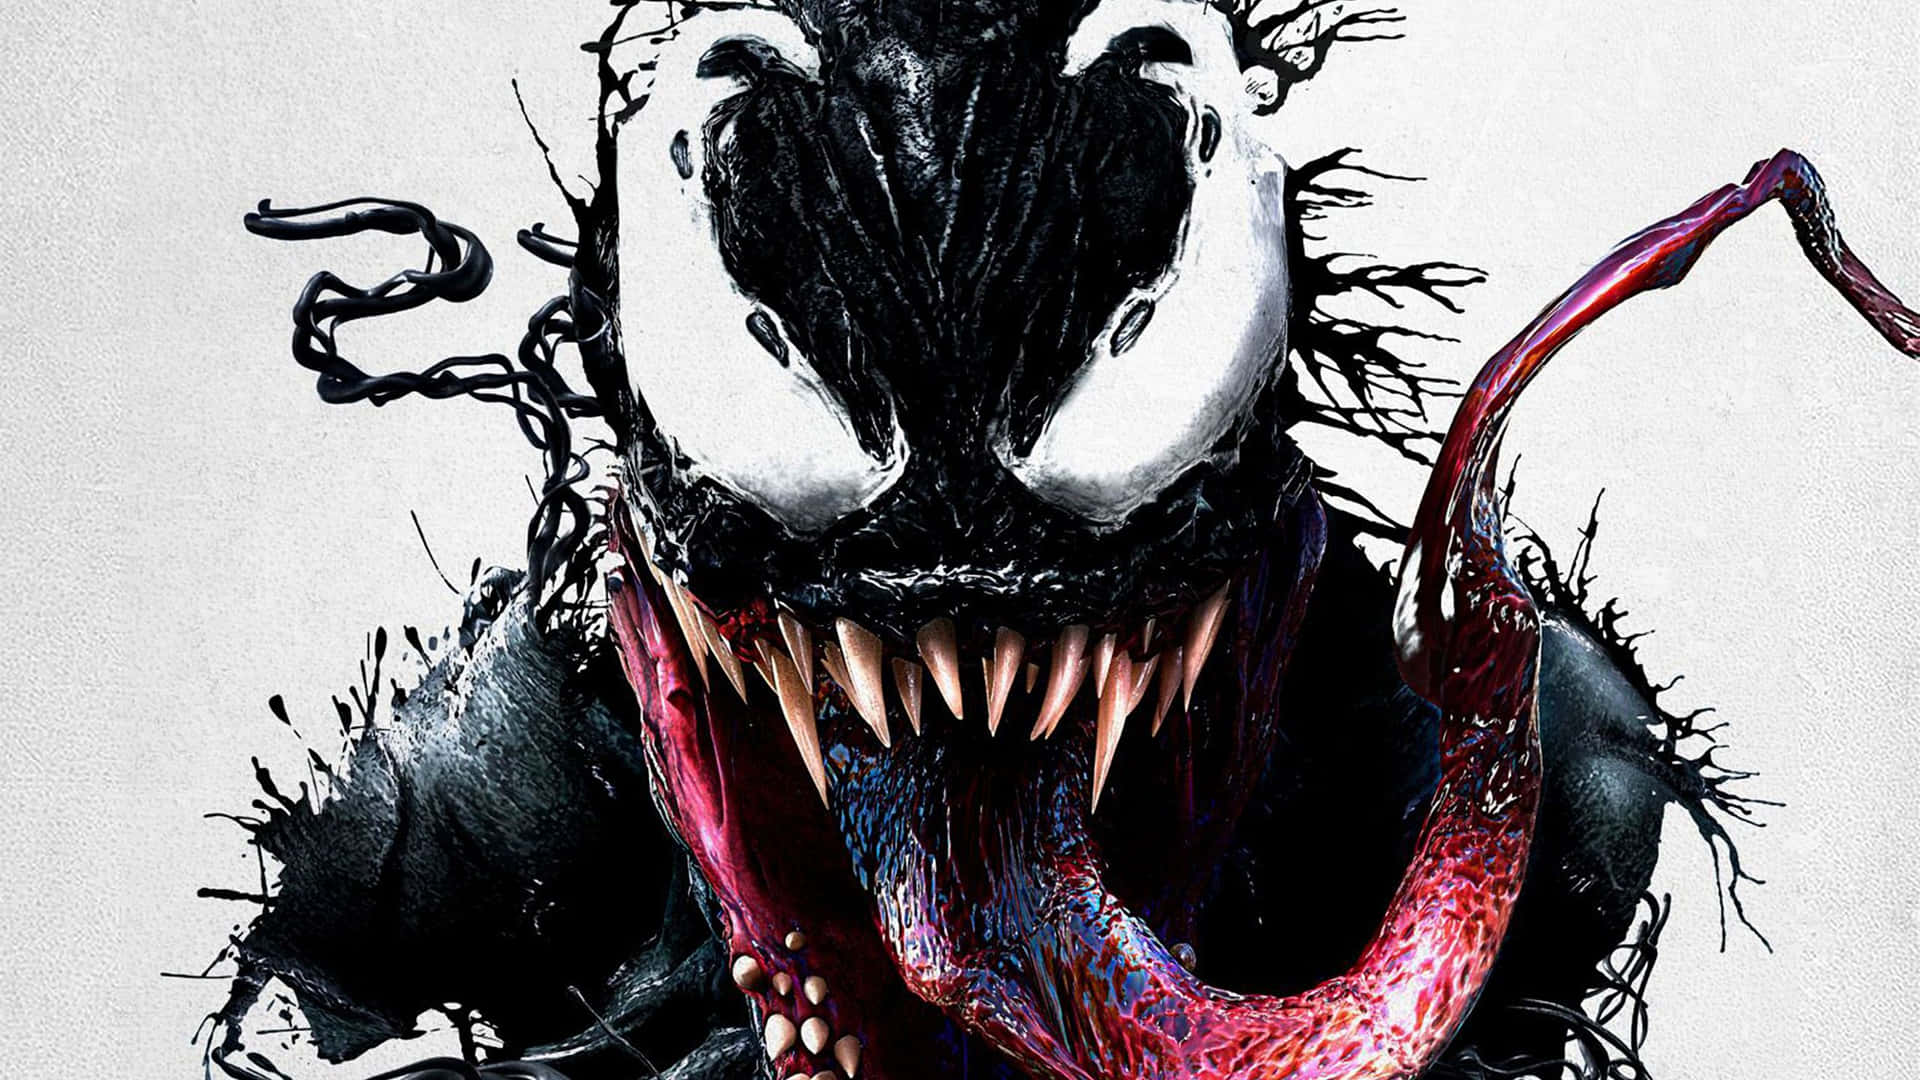 Billede forstørret abstrakte detaljer af Venom-karakteren fra Marvel-franchisen. Wallpaper